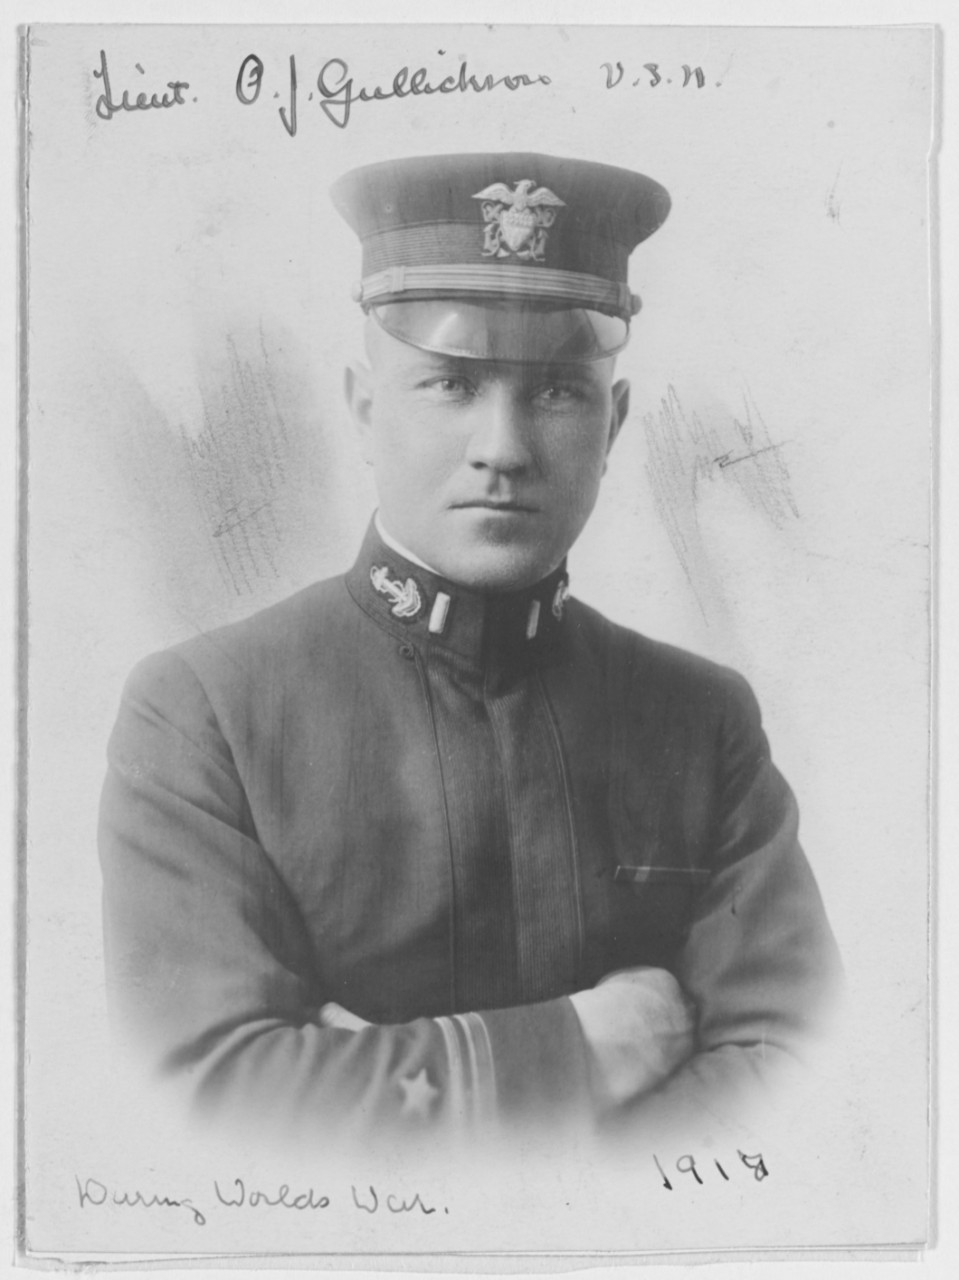 Lieutenant Junior Grade Olaf John Gullichson, USN